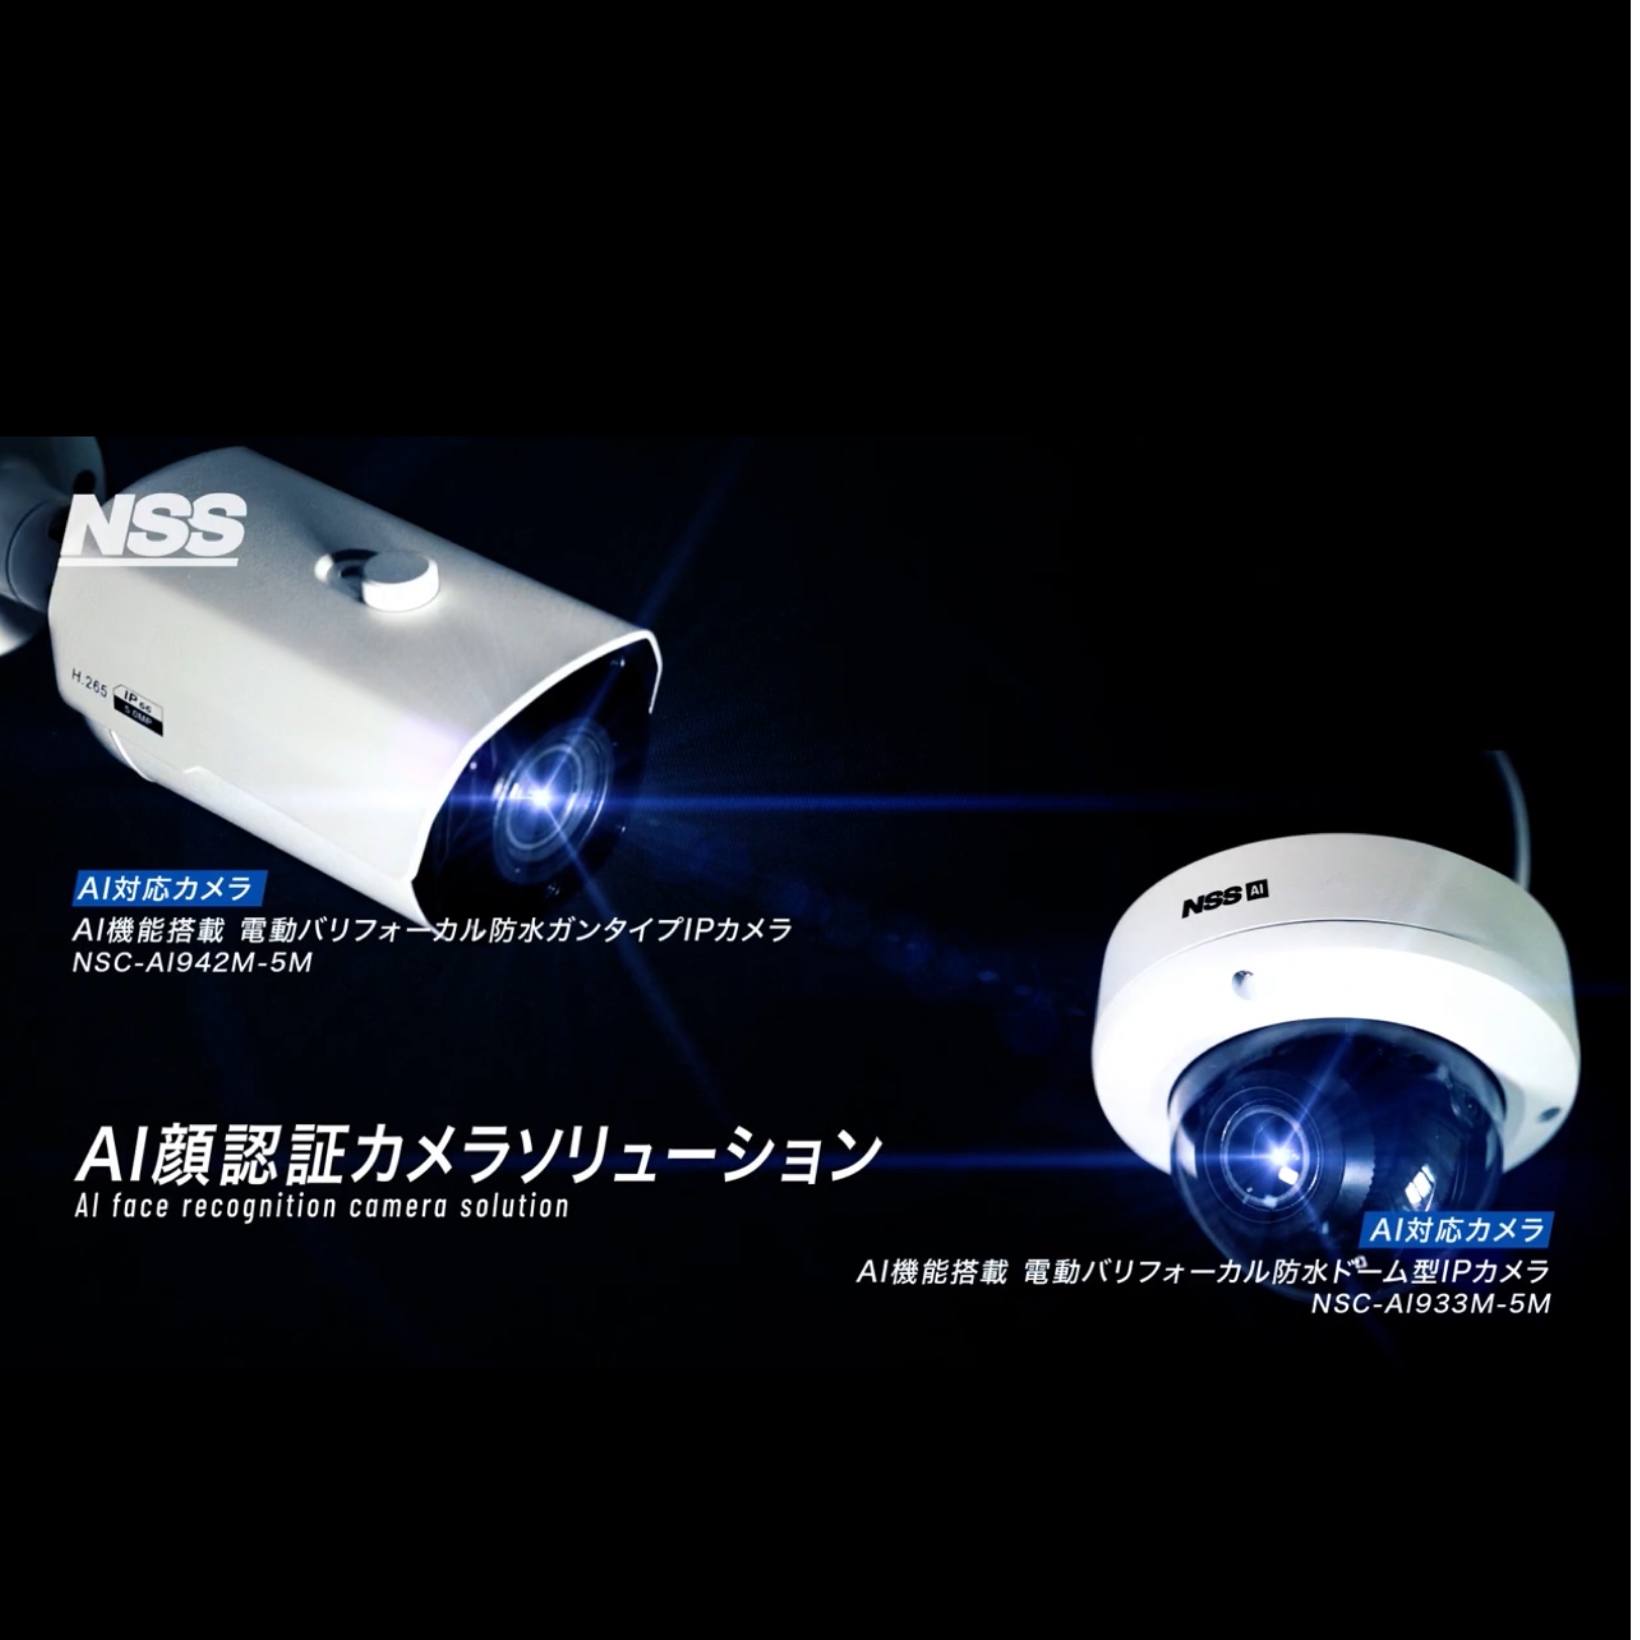 株式会社ブライト・ネット・システム / NSS AI顔認証カメラソリューション